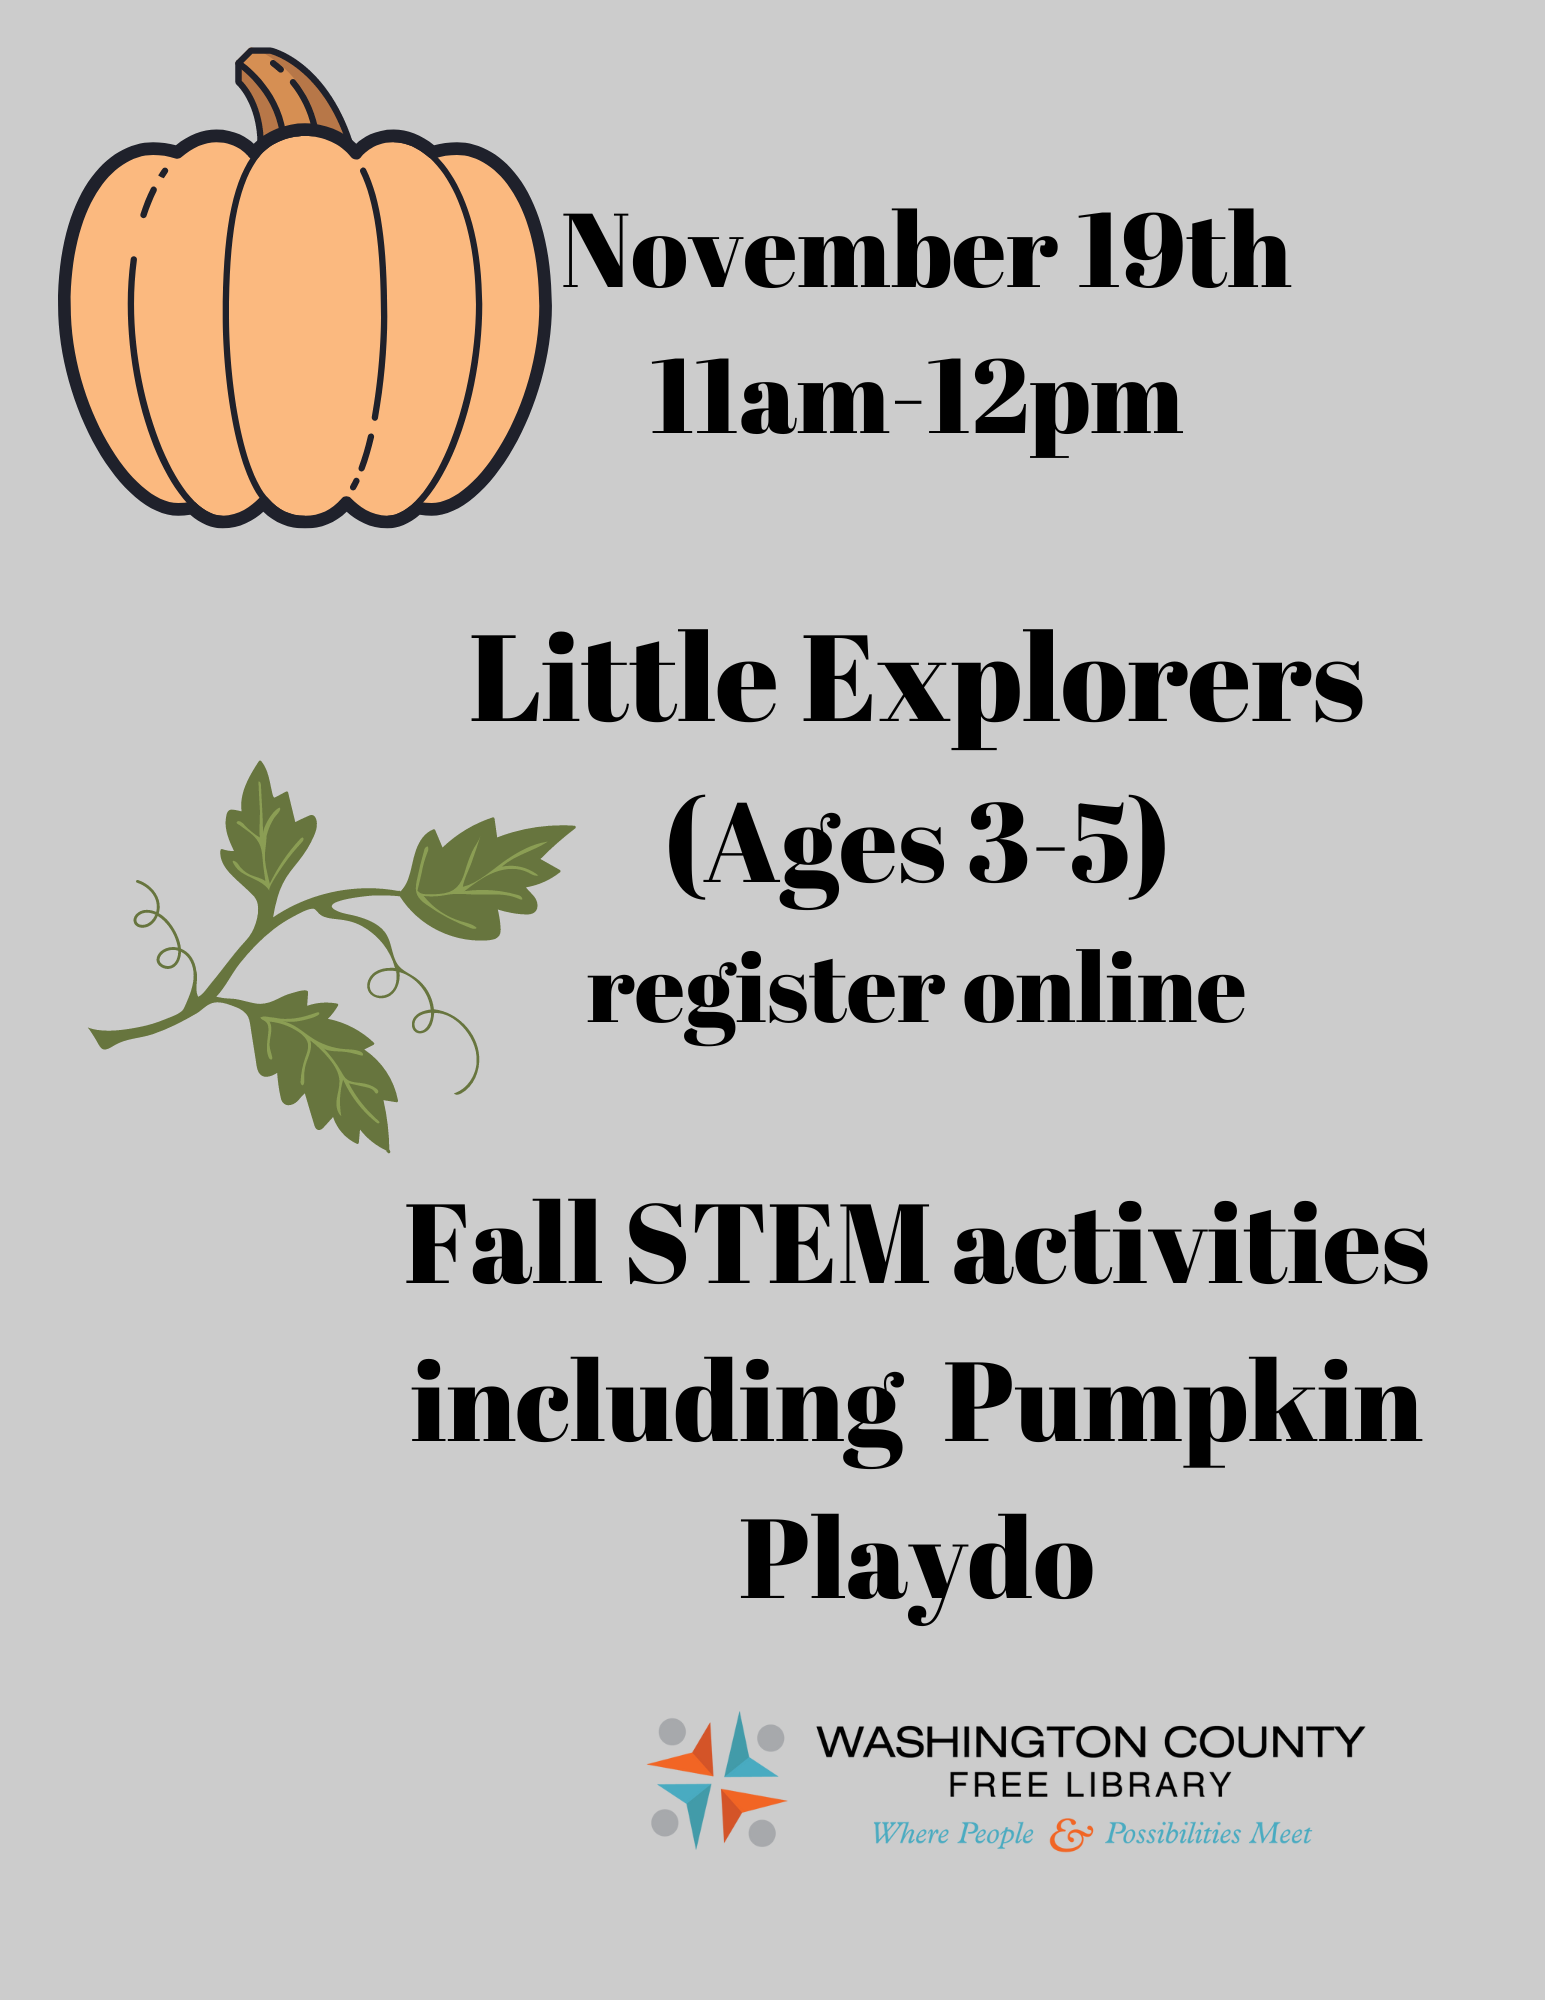 Little Explorers-Fall STEM activities